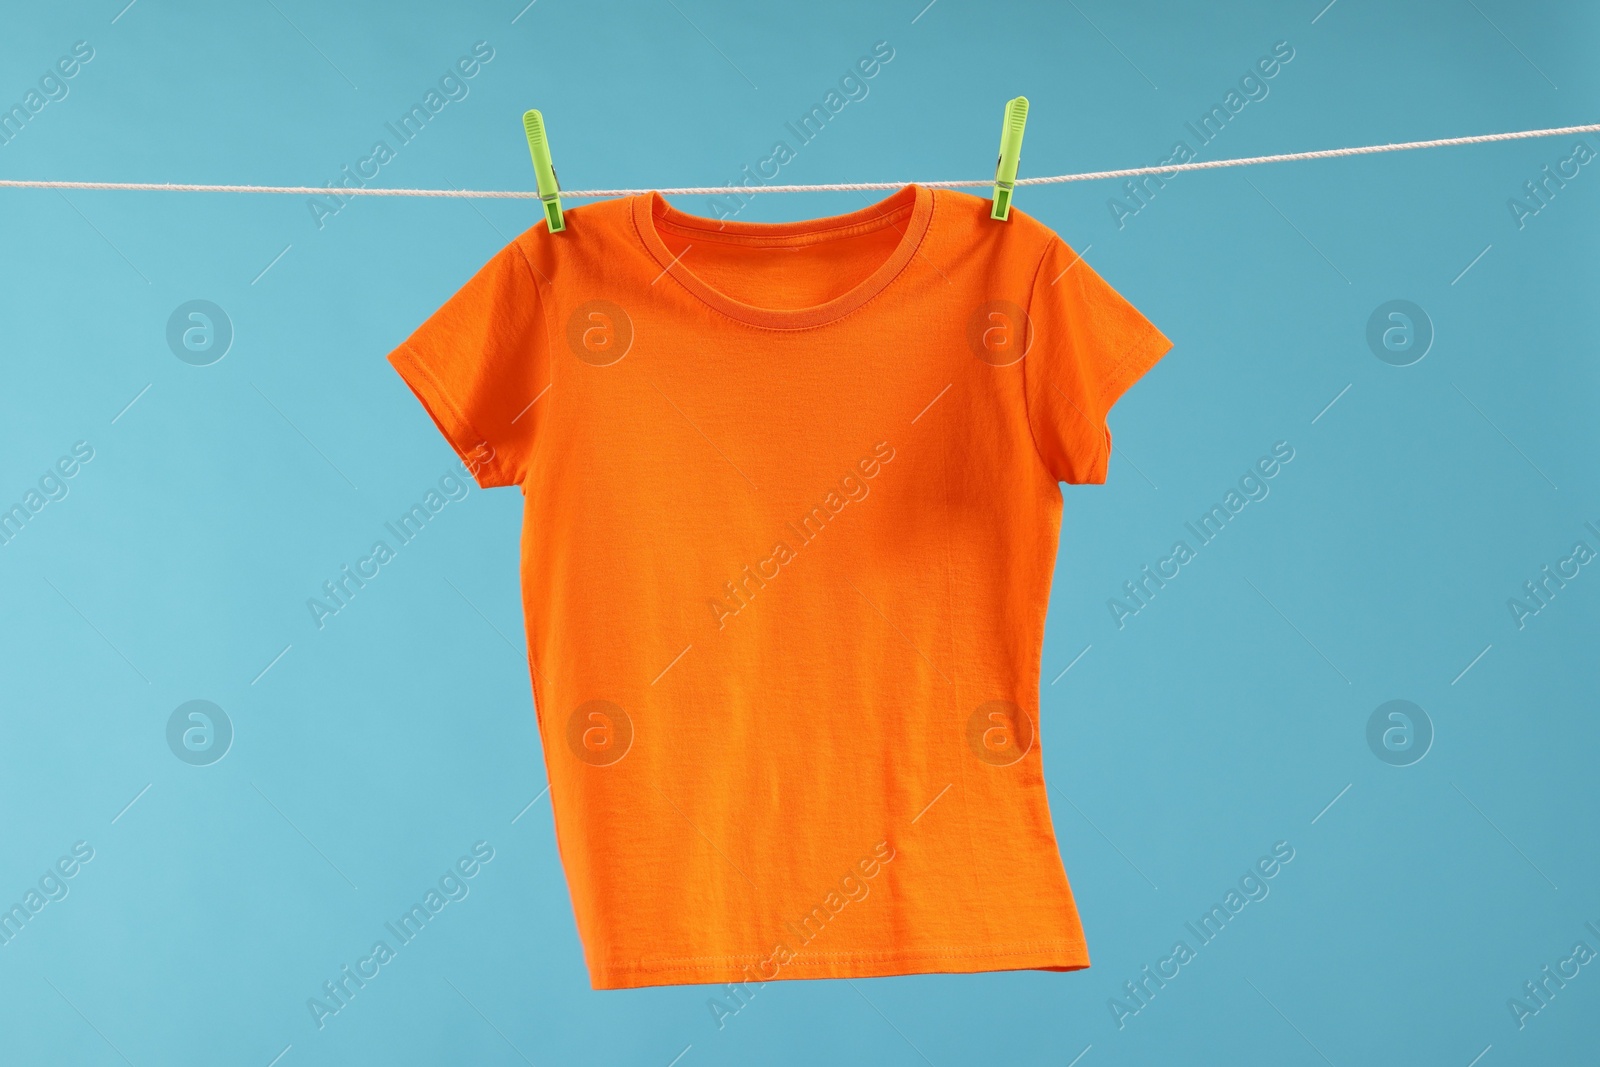 Photo of One orange t-shirt drying on washing line against light blue background